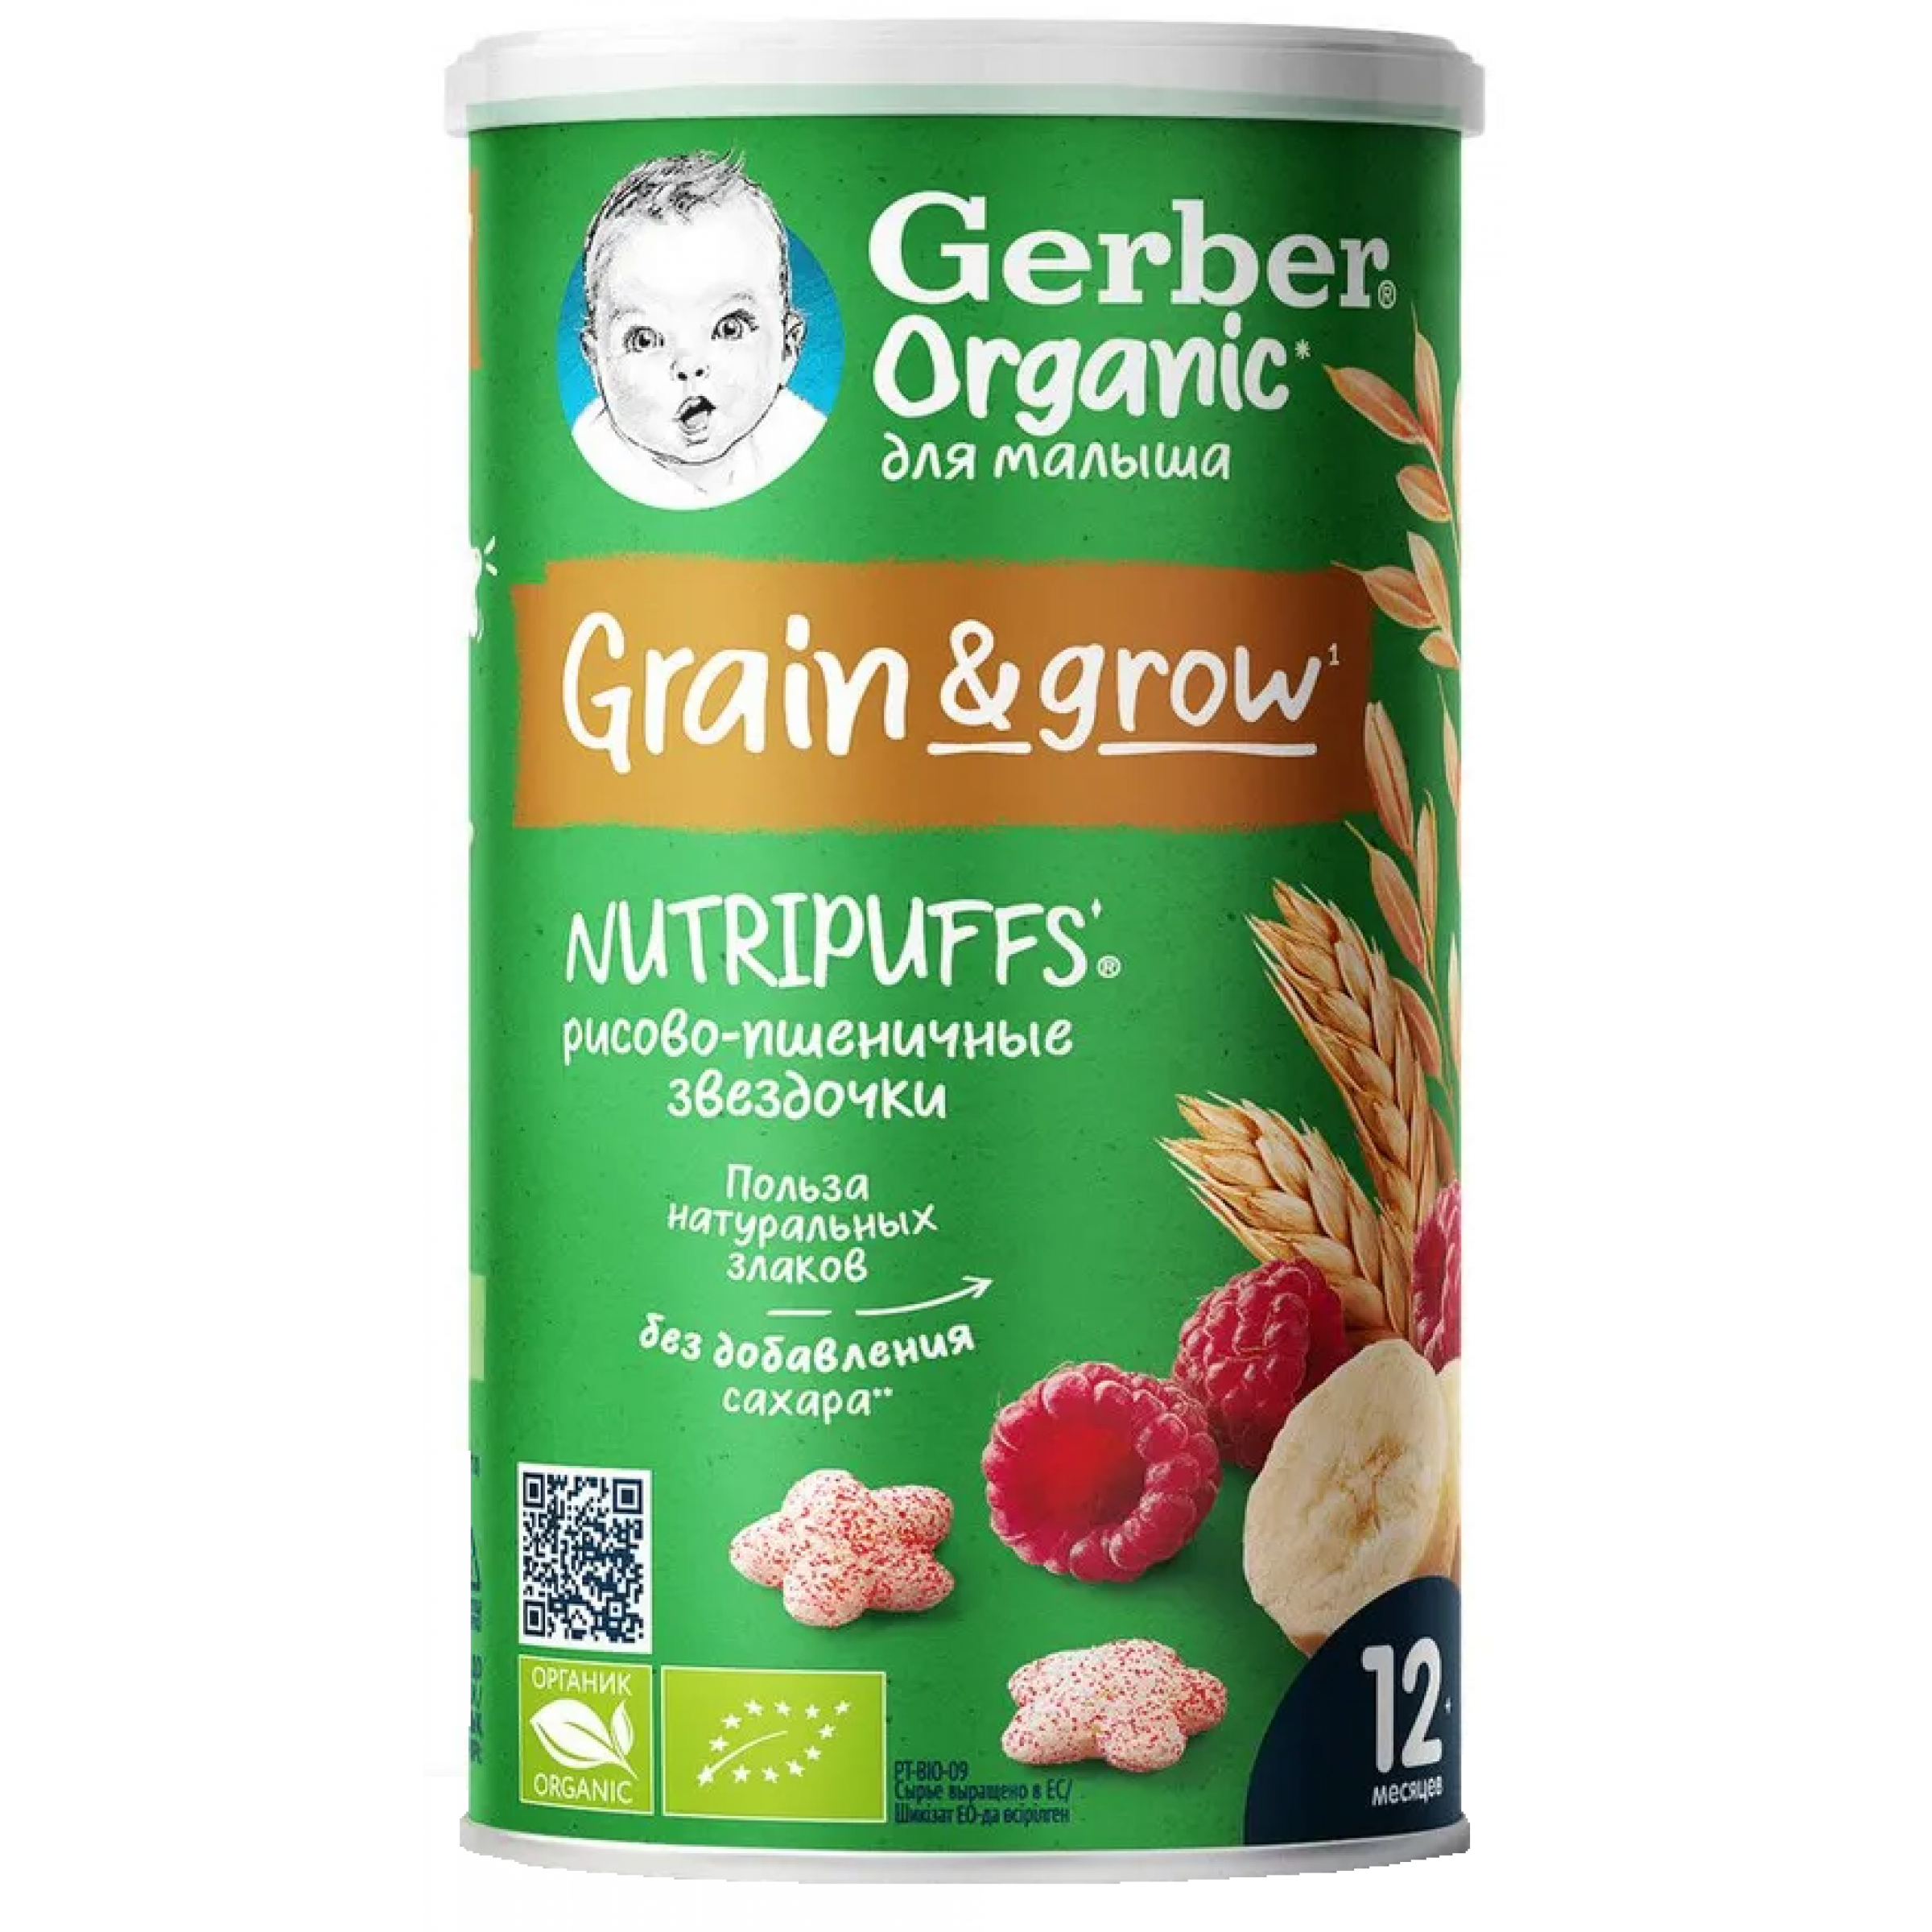 Детские рисово-пшеничные снеки Gerber Nutripuffs Банан и малина 35 г